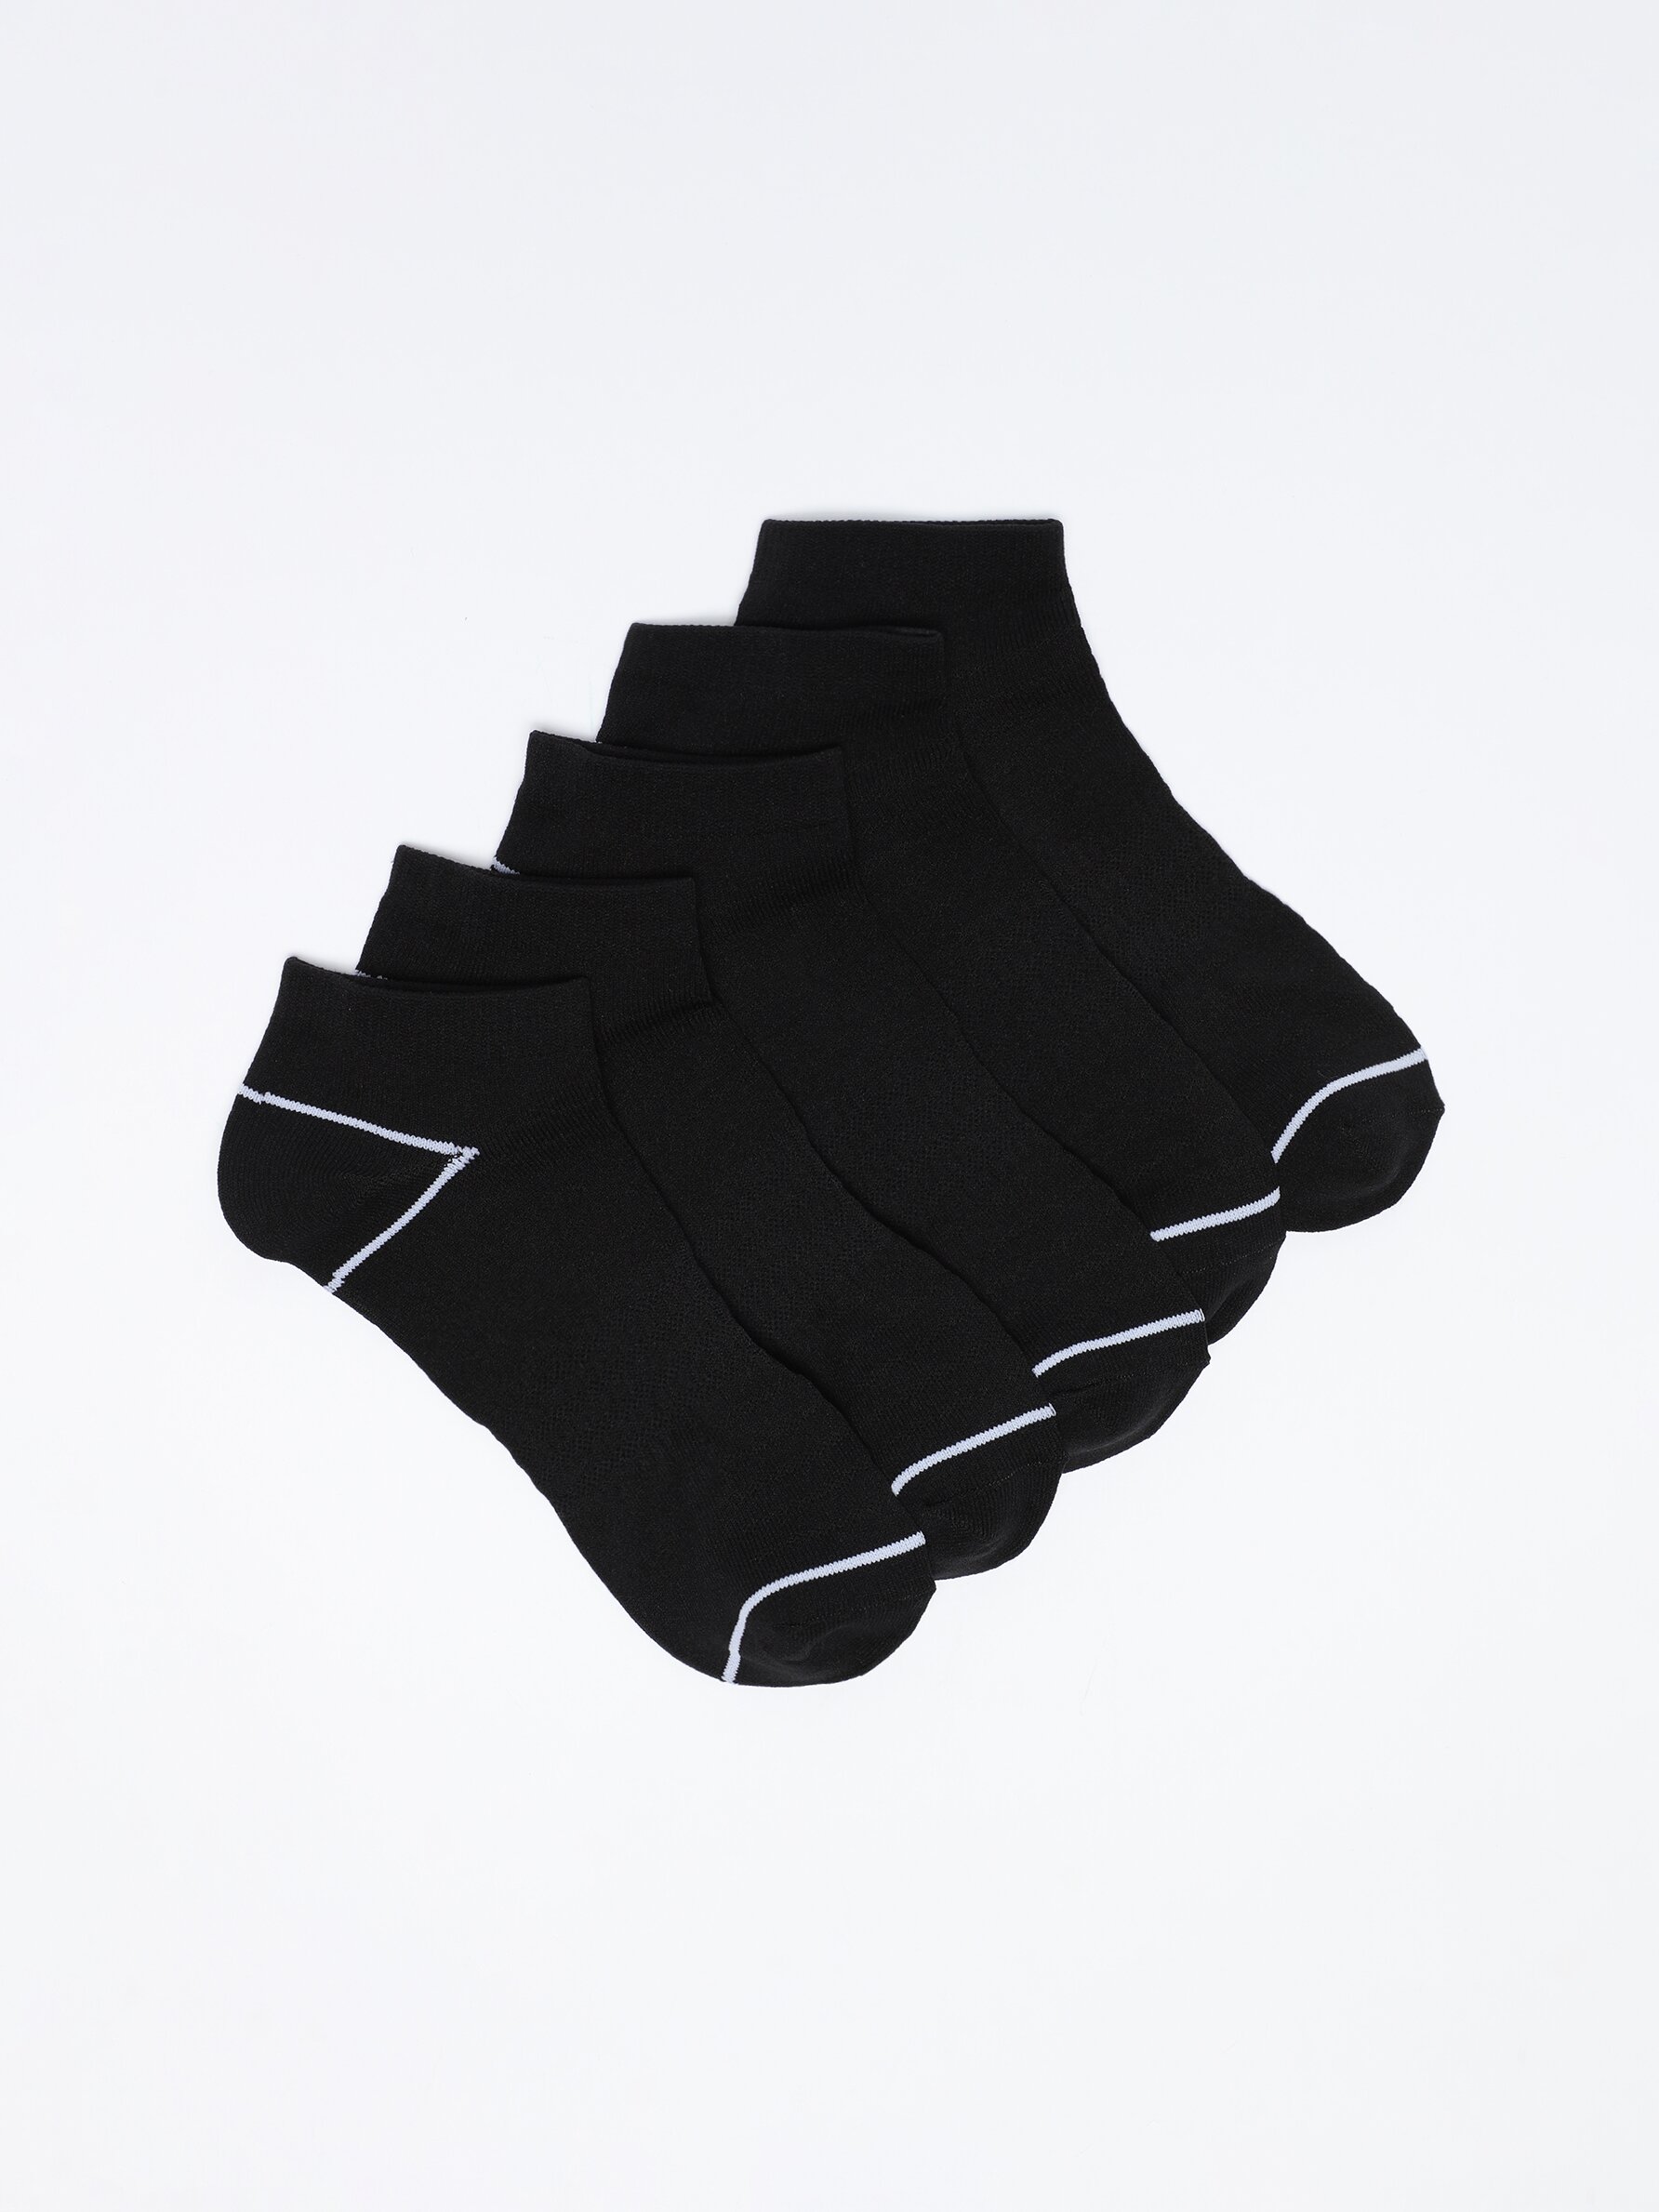 Pack de 5 calcetines tobilleros Deportivos - Calcetines Cortos - Calcetines  - ROPA INTERIOR, PIJAMAS - Hombre 